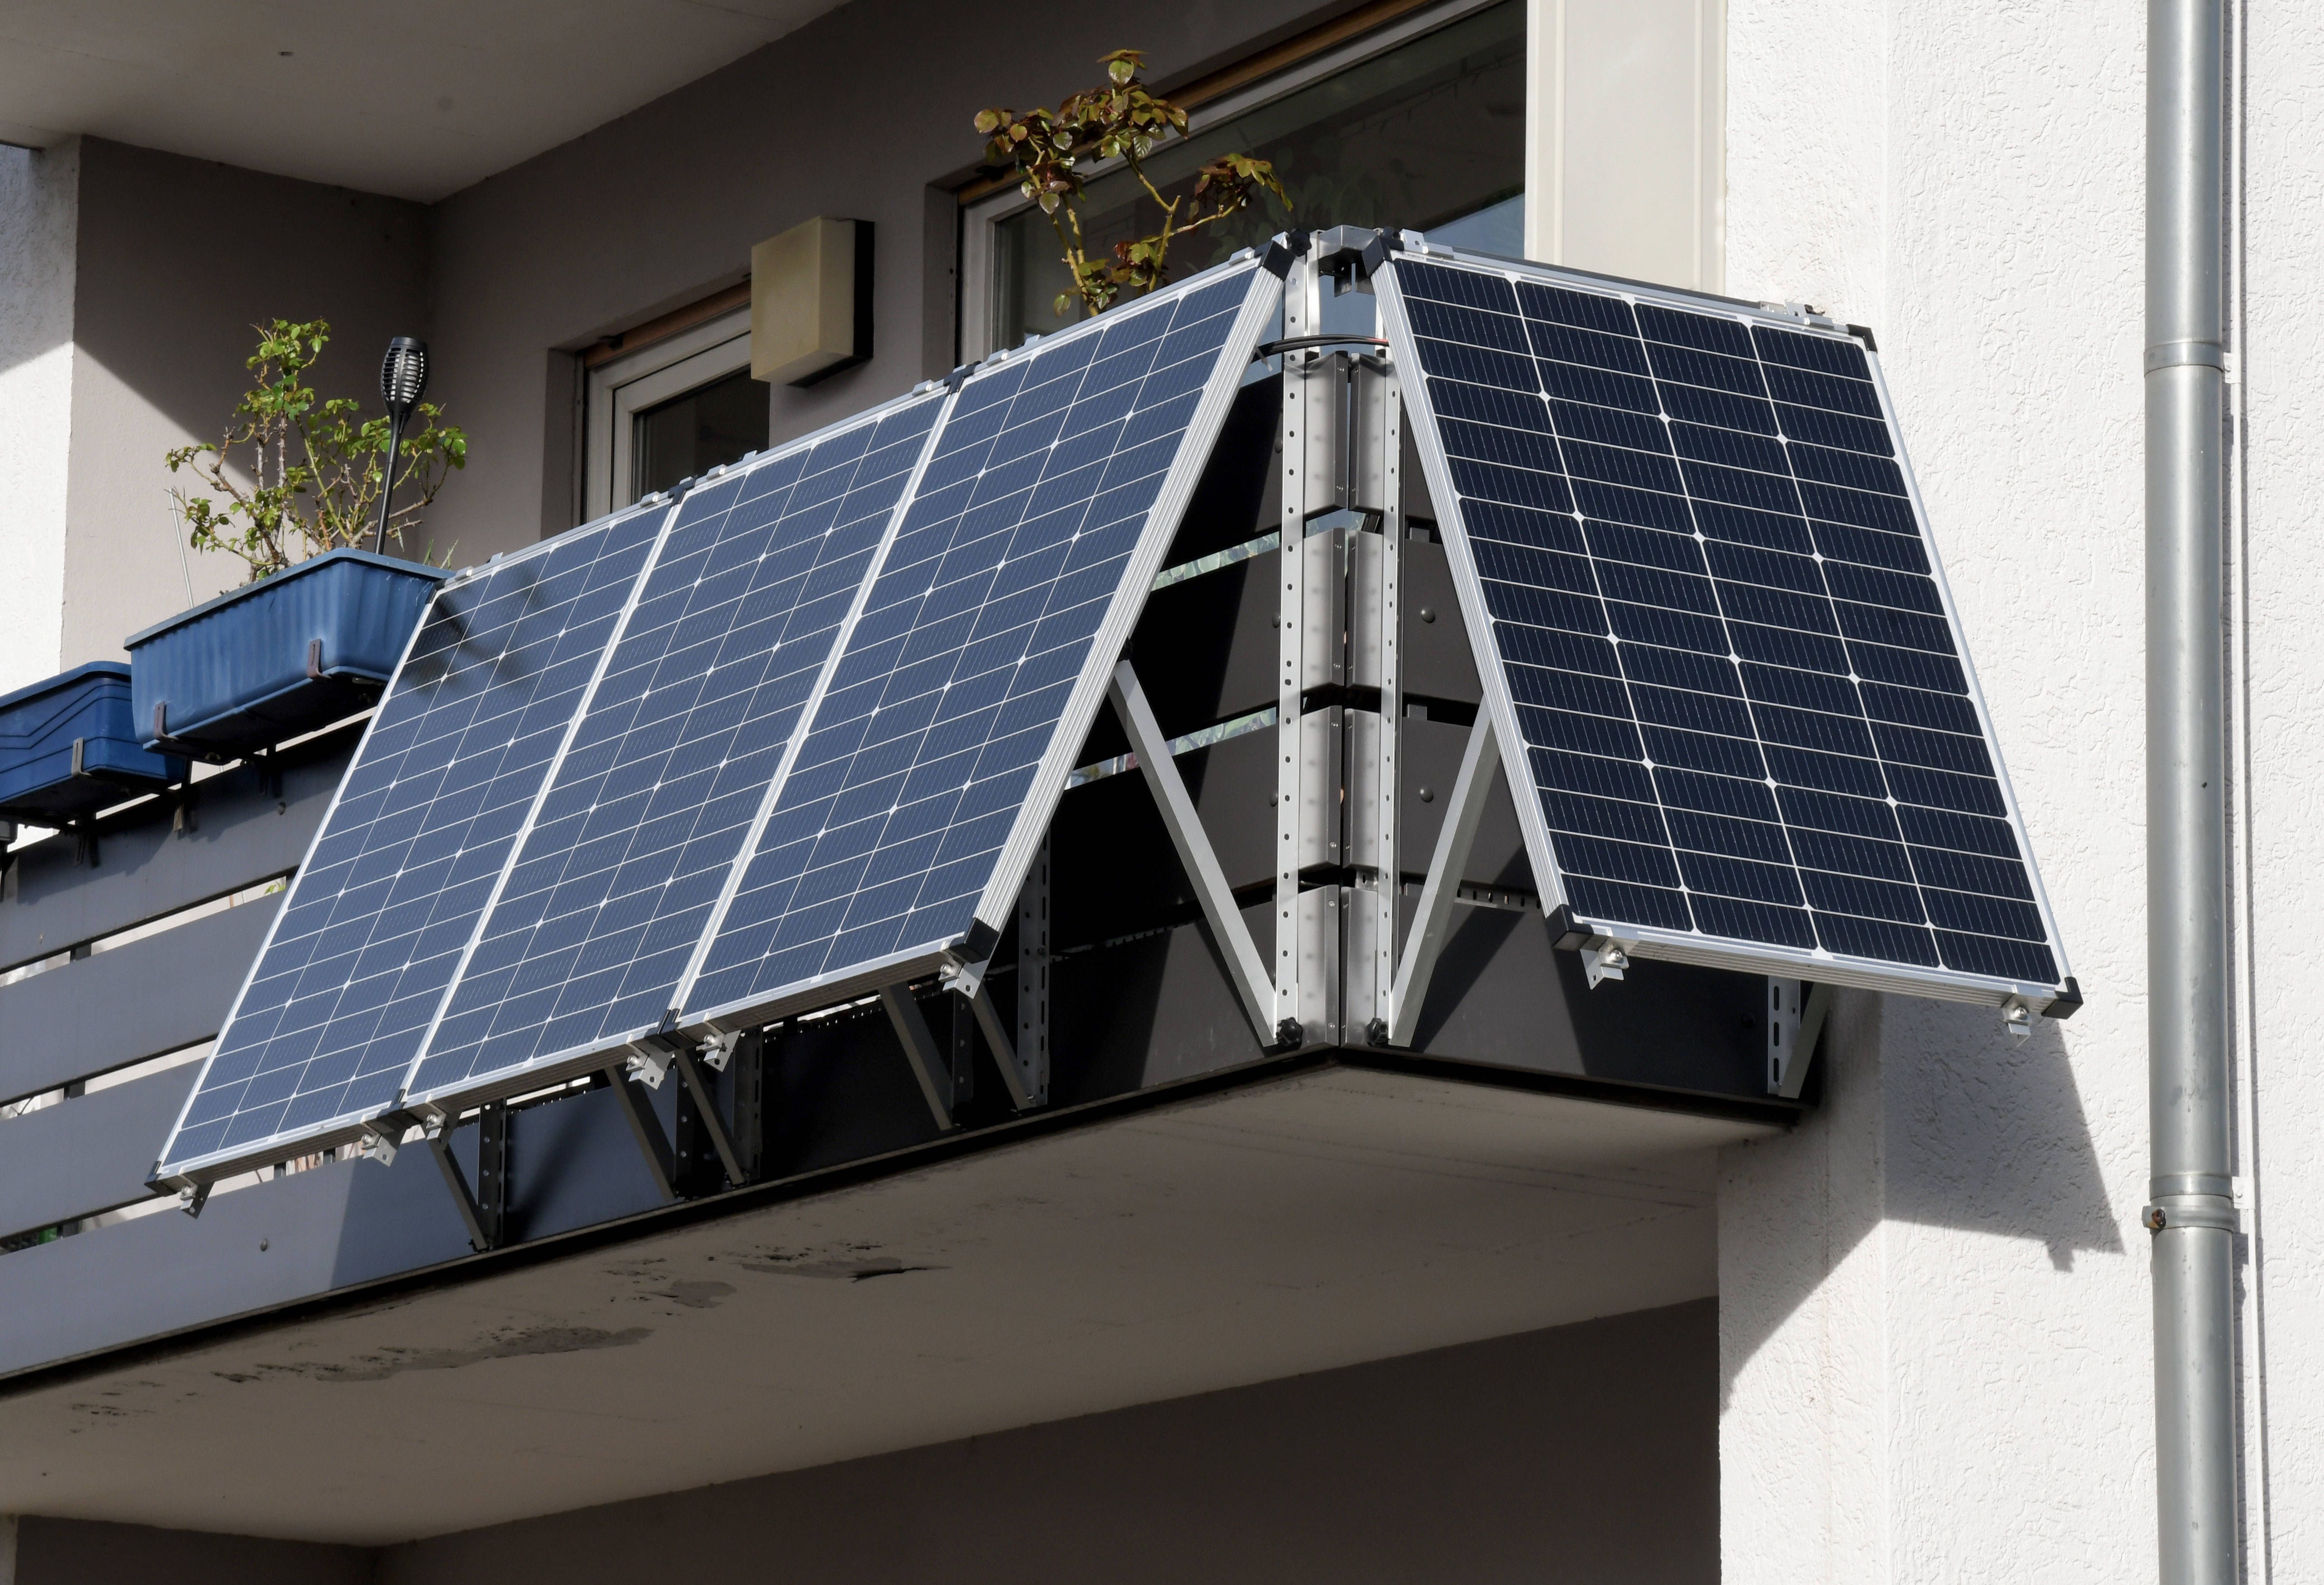 Balkon-Kraftwerke in Deutschland boomen. Mit dem Solar-Paket will die Ampel ihre Nutzung erleichtern.